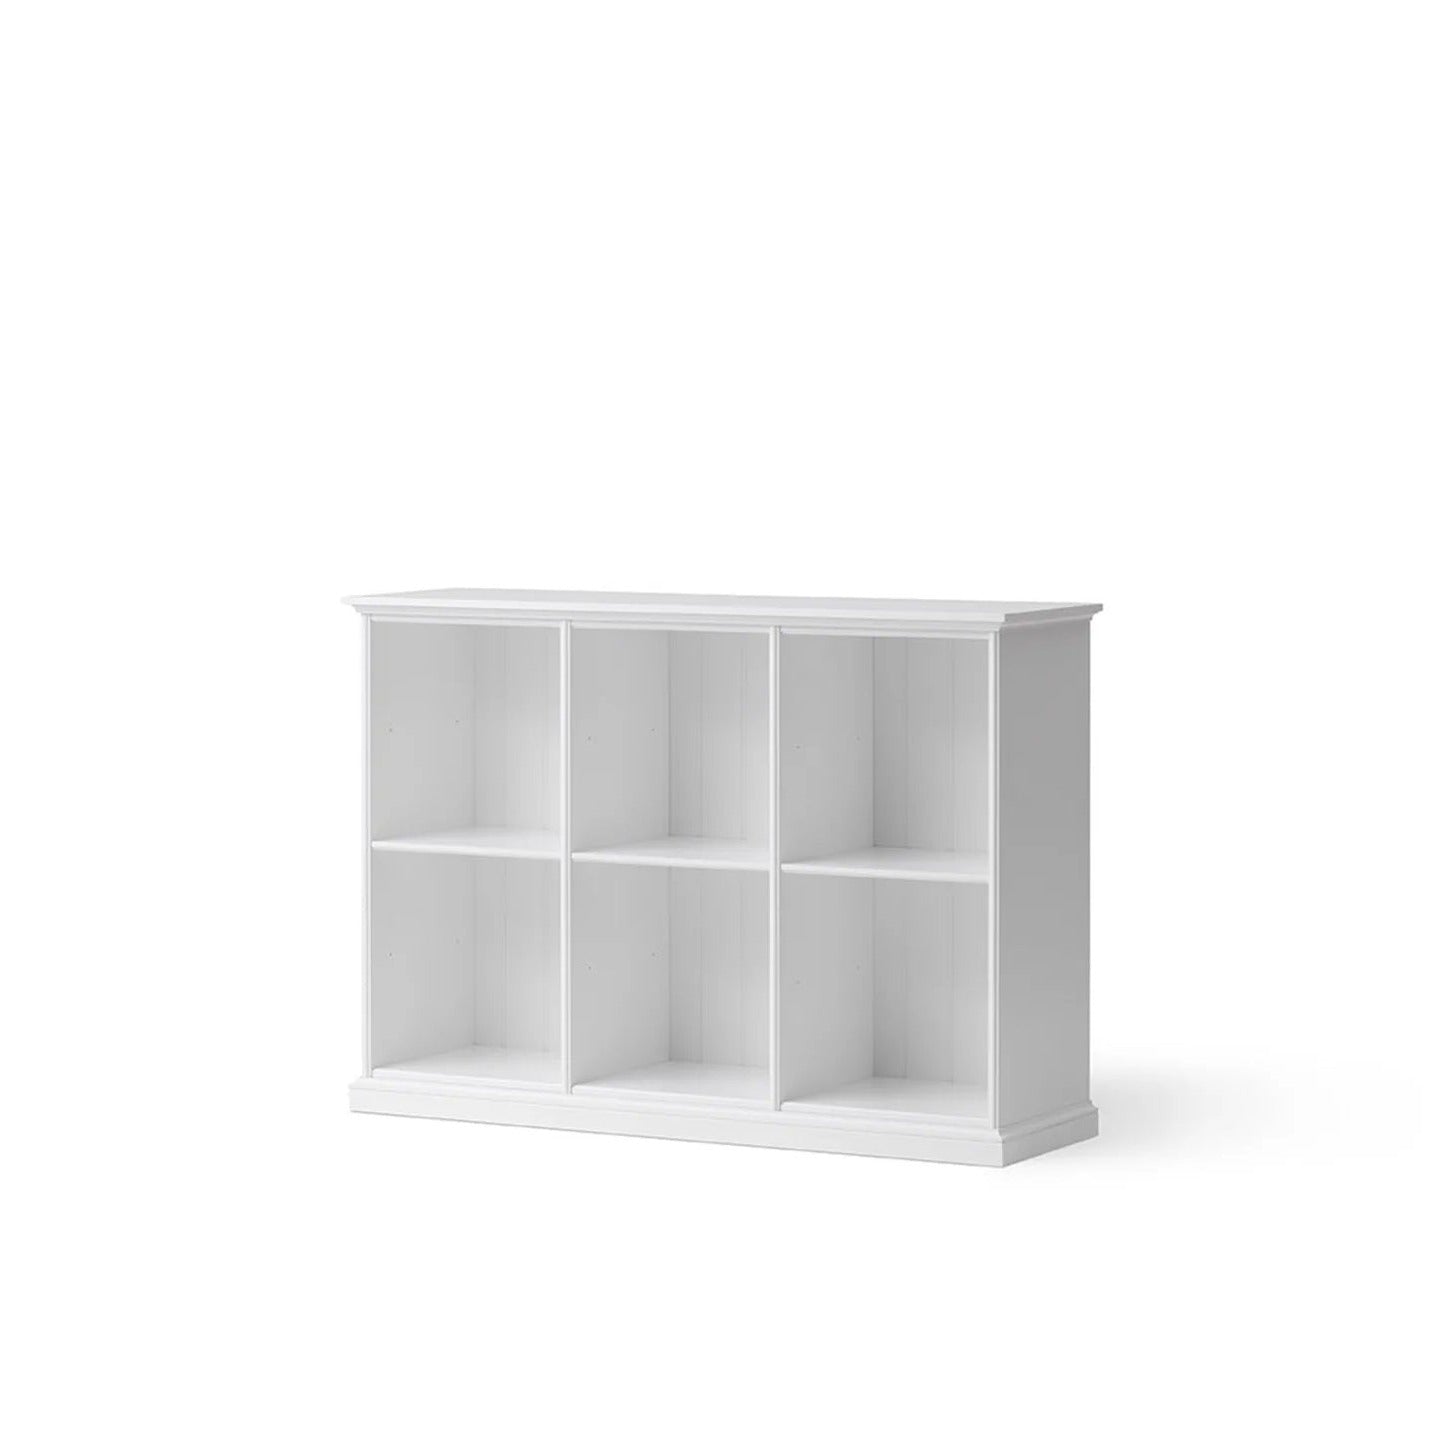 Oliver Furniture Seaside Low Standing Cabinet - 6 Shelves